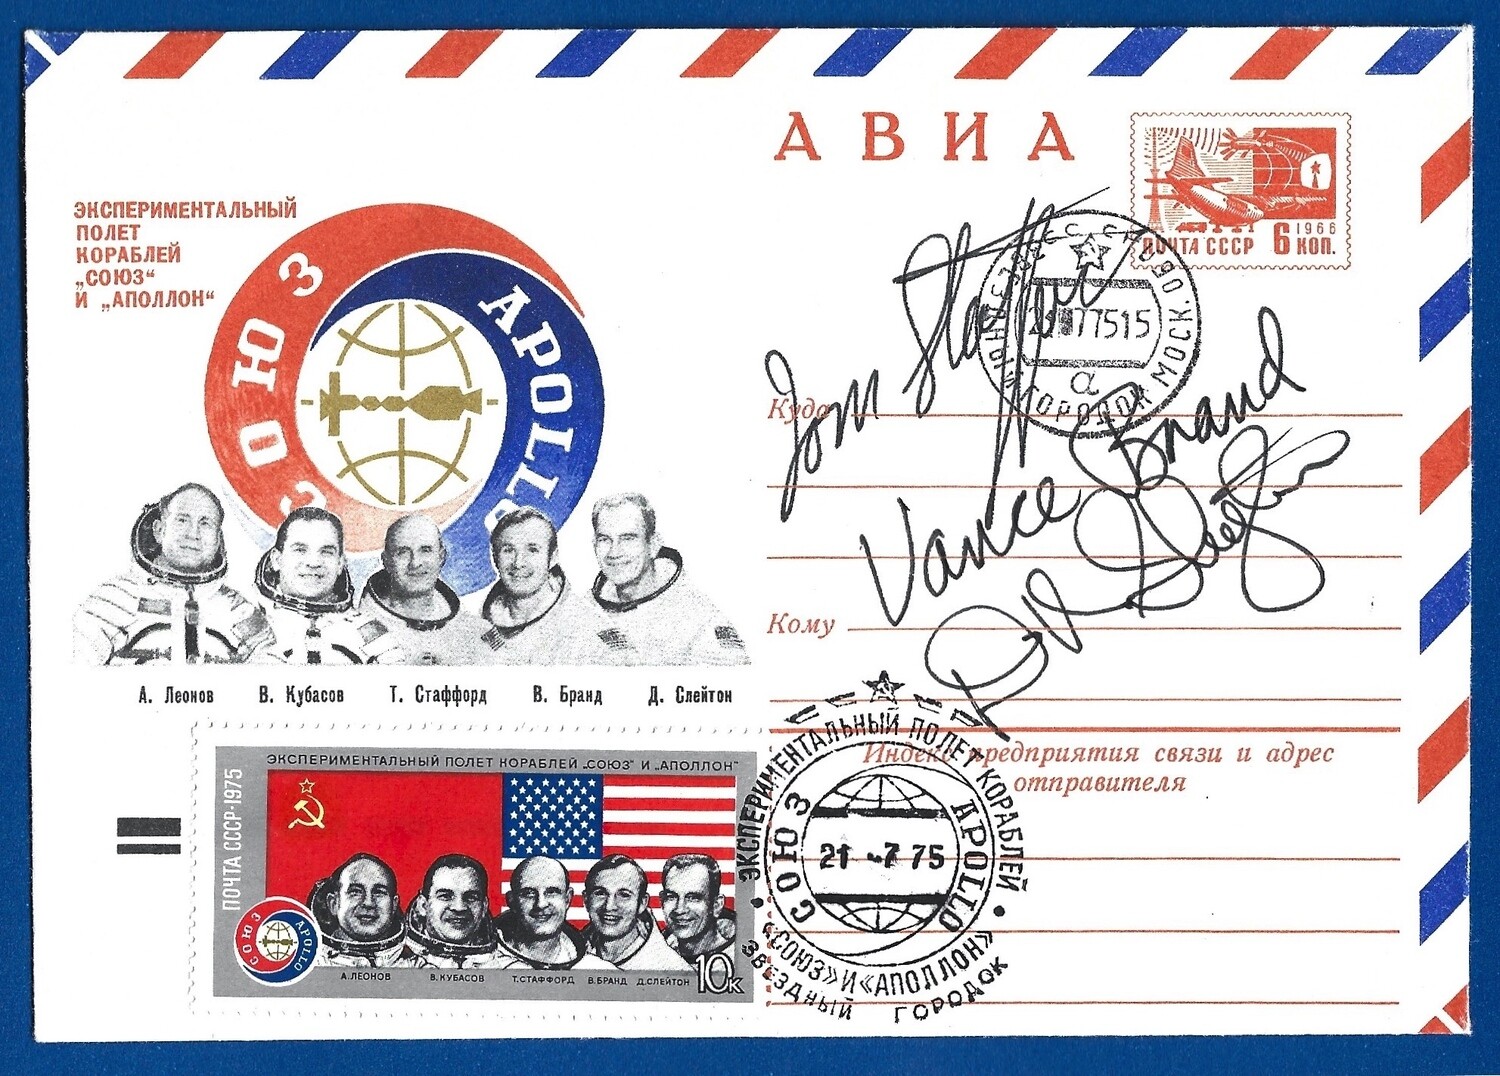 Apollo-Soyuz crew signed envelope